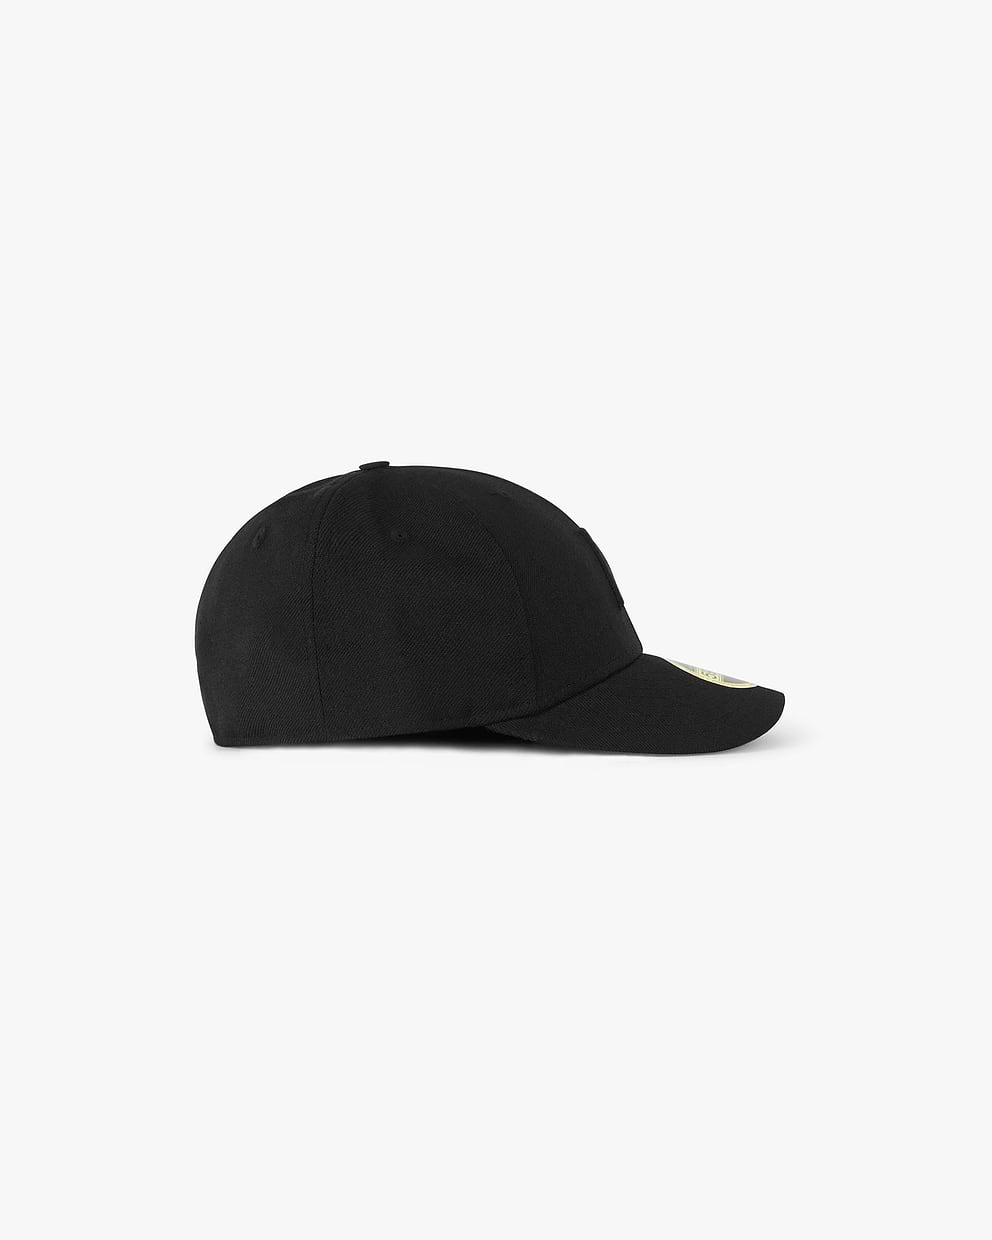 Initial New Era 59Fifty Cap - All Black